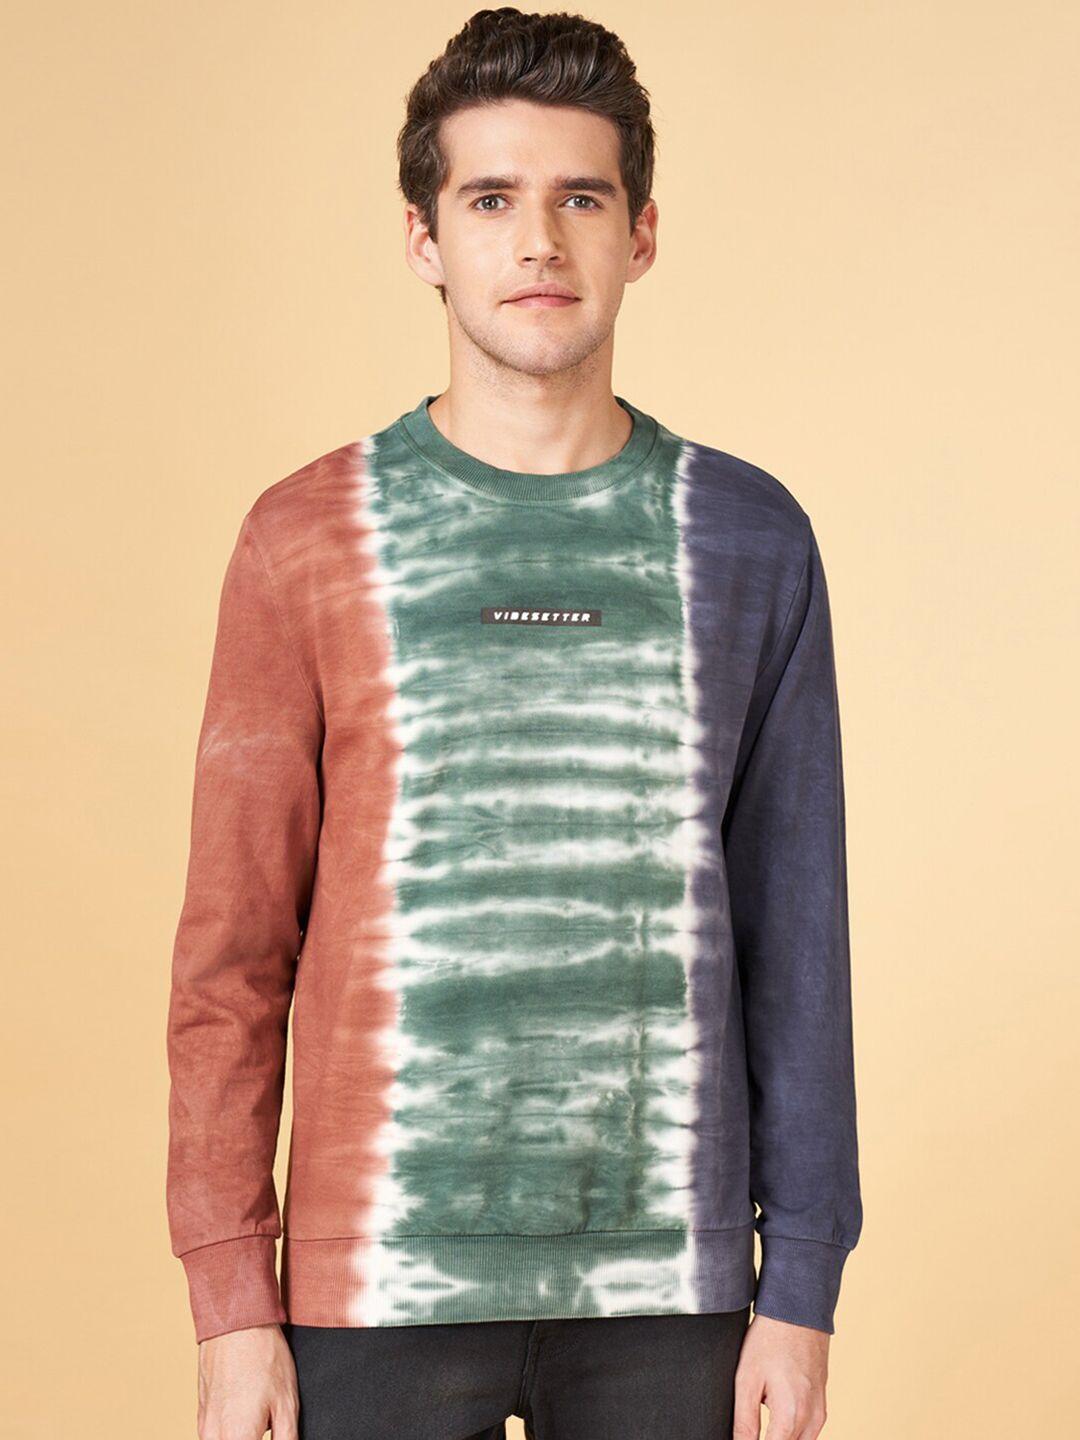 yu by pantaloons abstract printed cotton sweatshirt